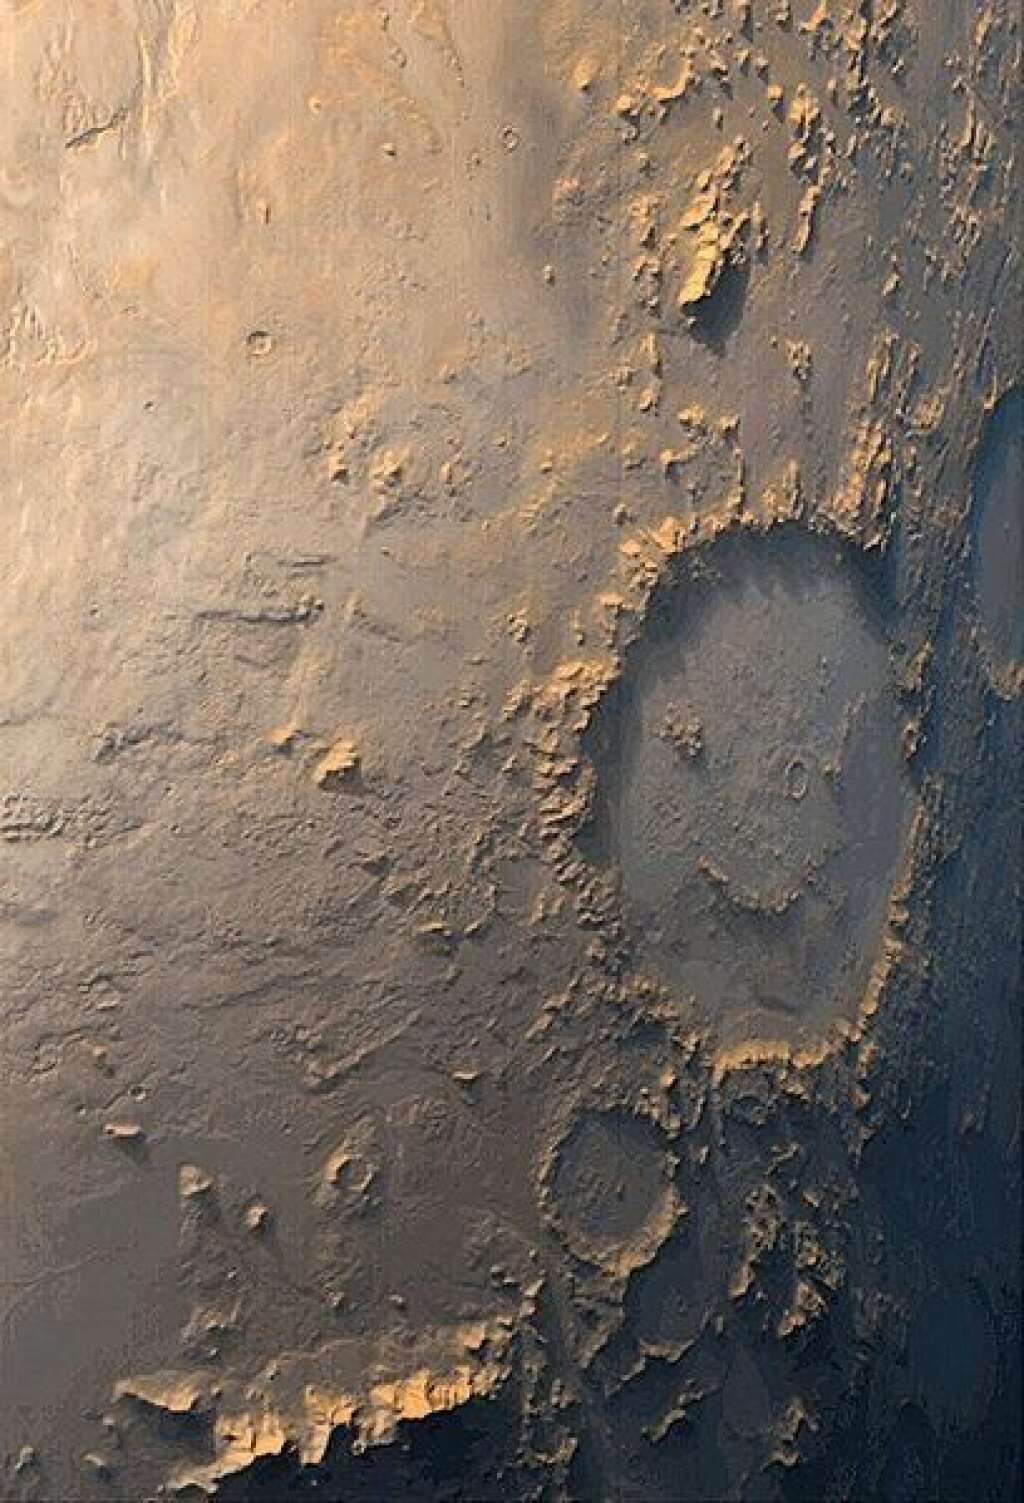 Le sourire de Mars - Le visage souriant sur la droite de la photo correspond au cratère Galle sur Mars (photo prise en 1999).